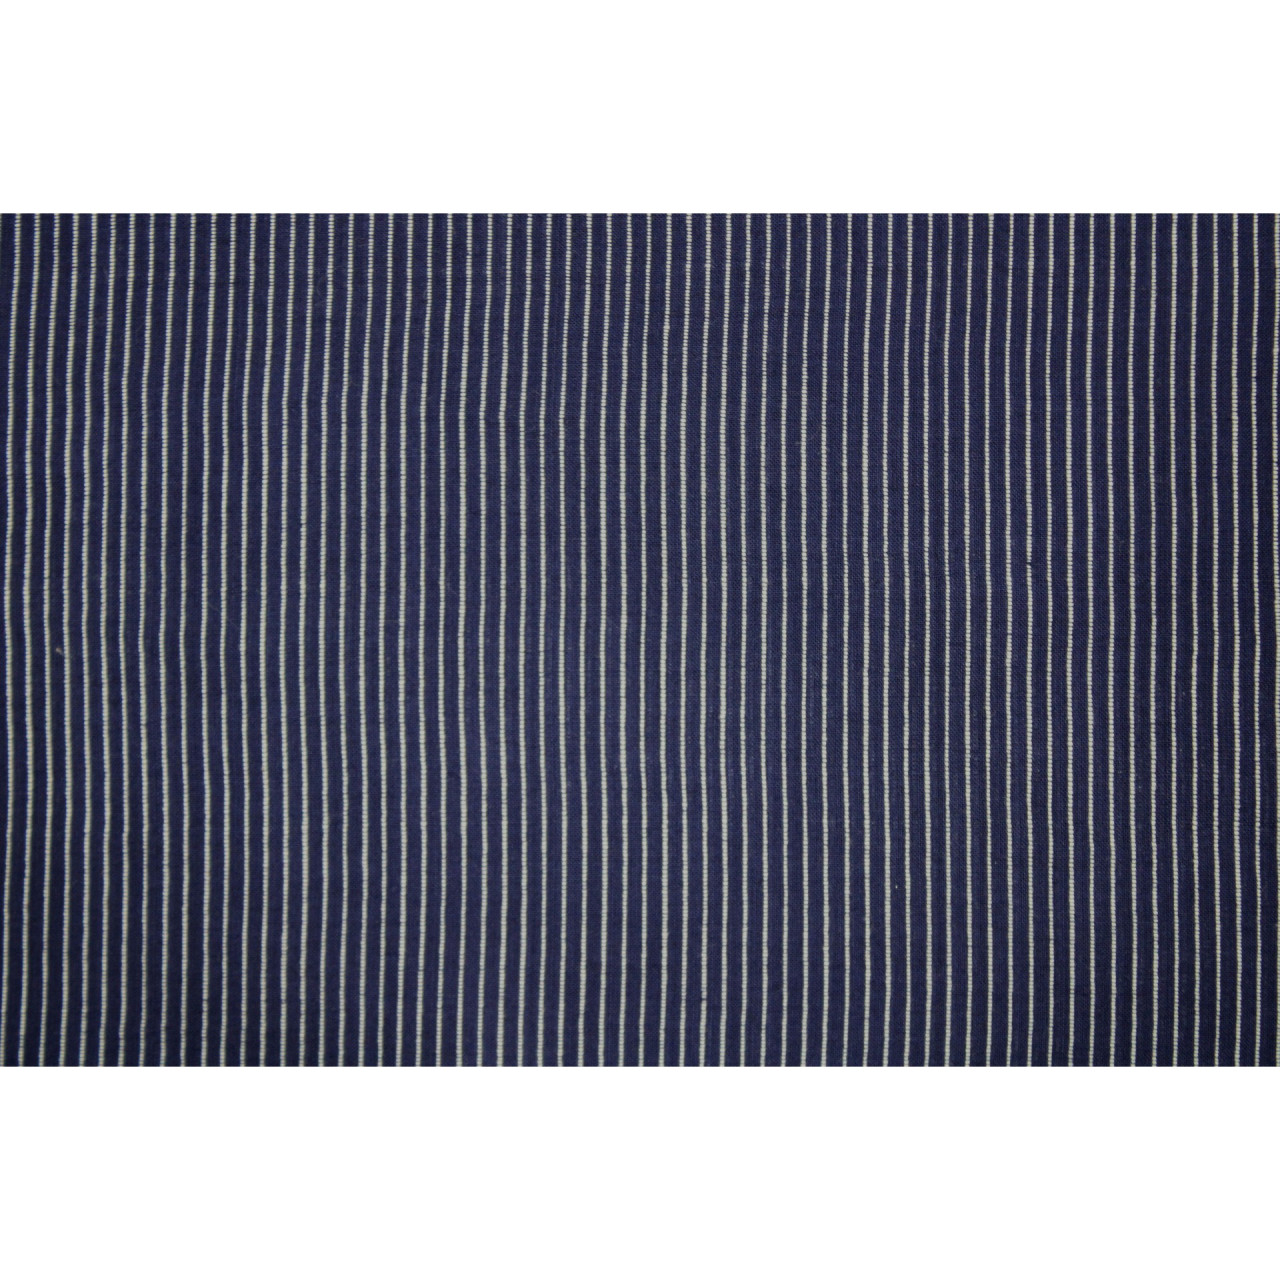 (1927) Cotton Azo-free dyed yardage from Murshidabad - Dark indigo, white, stripes